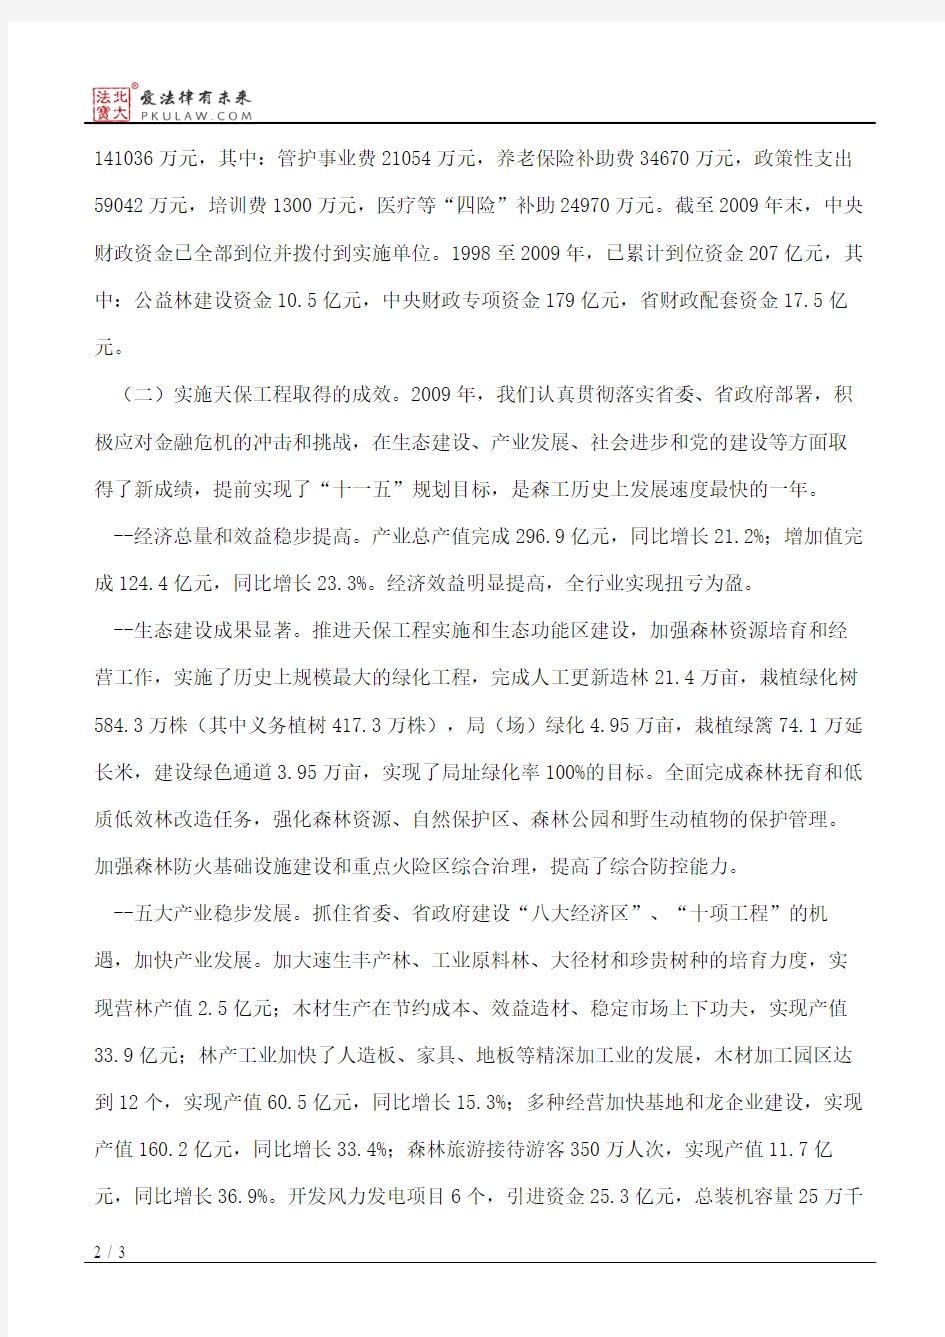 黑龙江省财政厅关于我省2009年天保工程实施和财政资金使用情况的总结报告